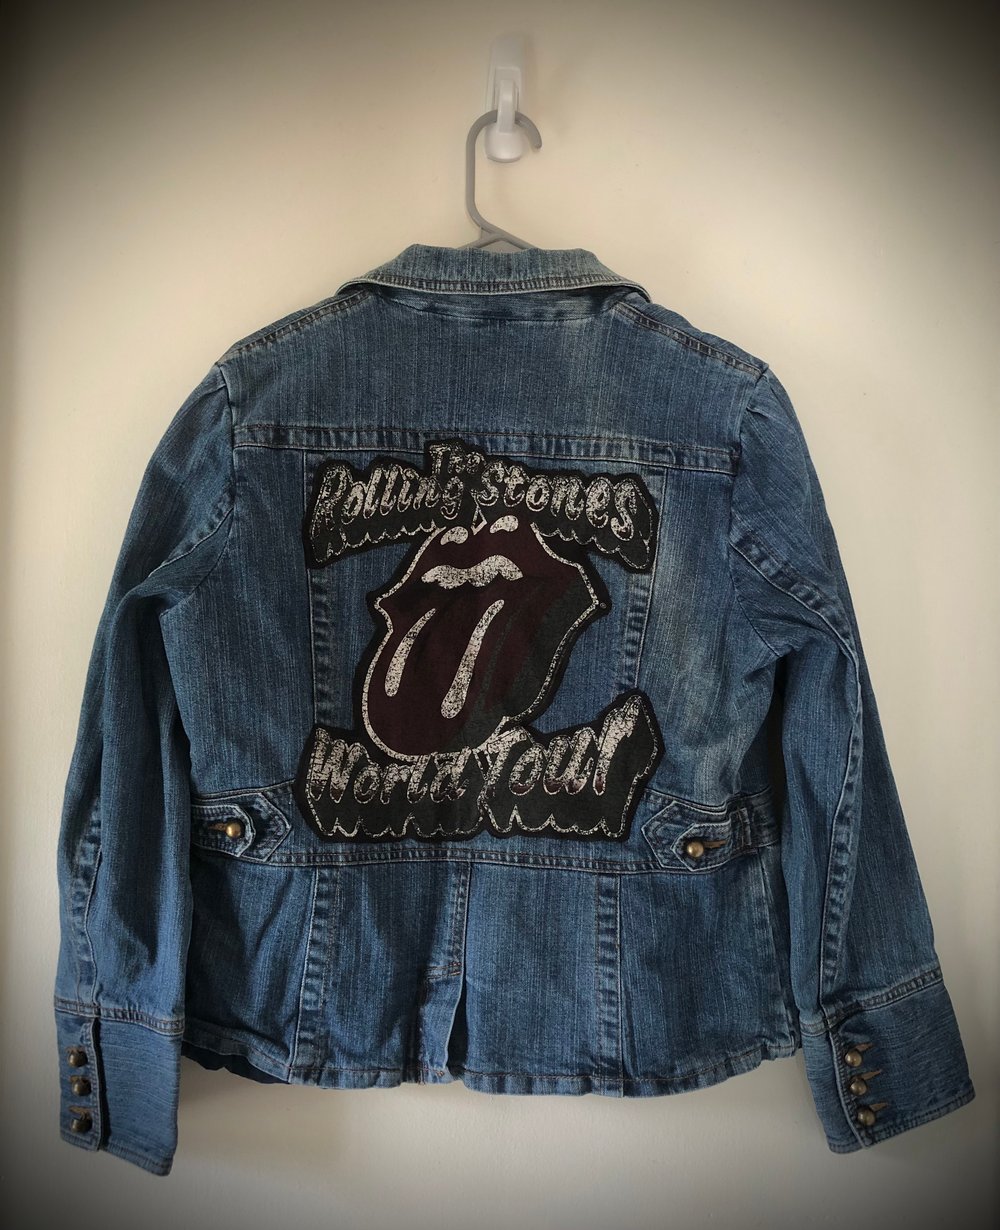 Upcycled “Rolling Stones: World Tour” denim jacket